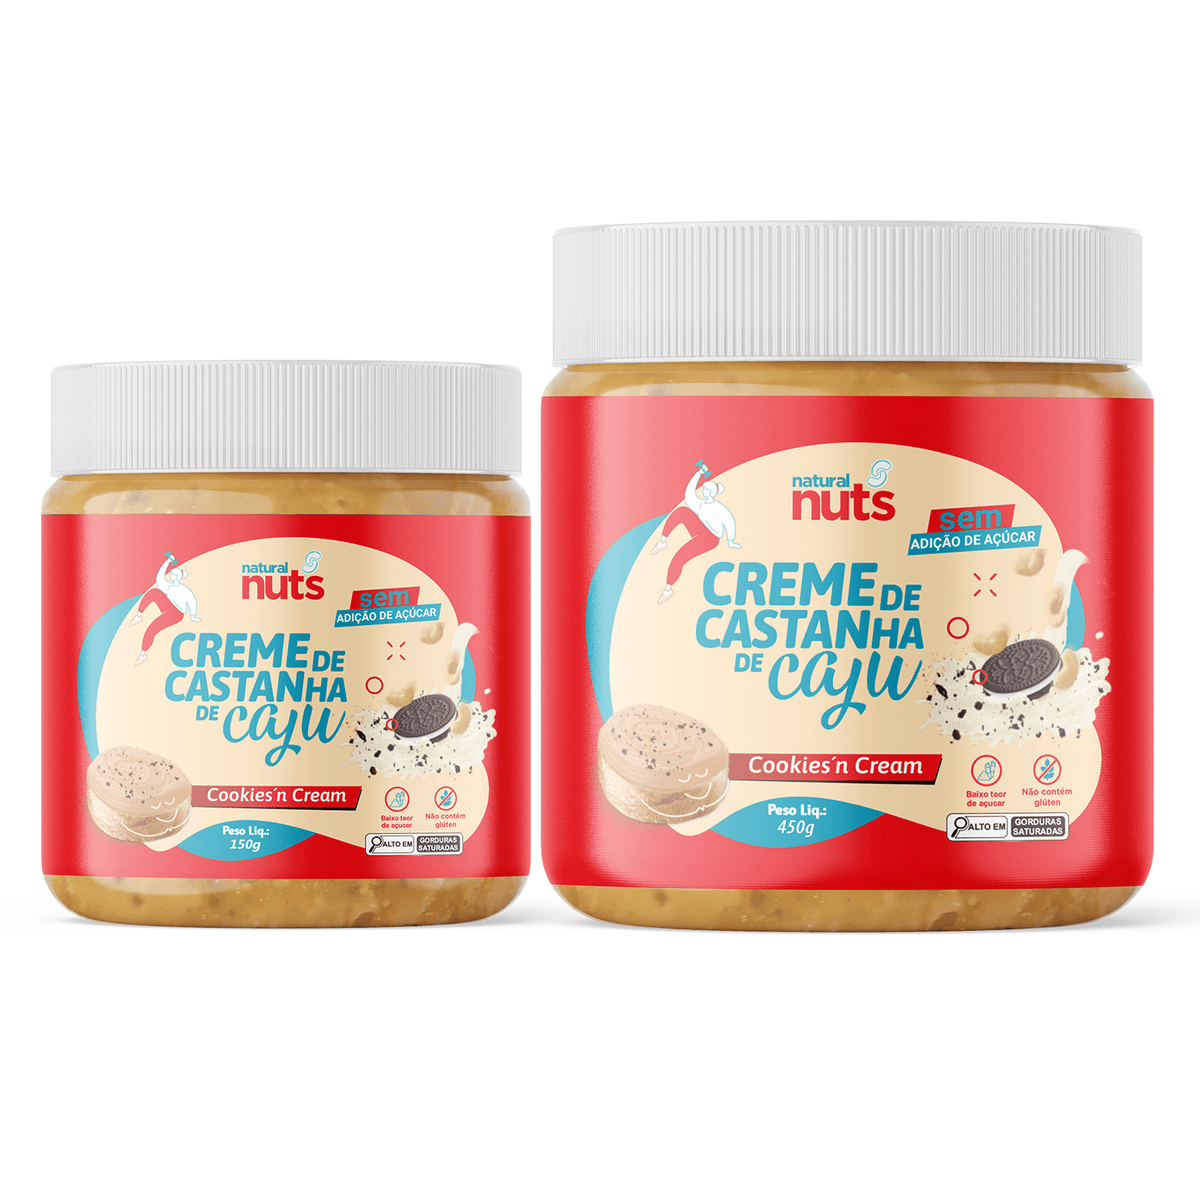 Creme de Castanha de Caju Cookies'n Cream - Natural Nuts